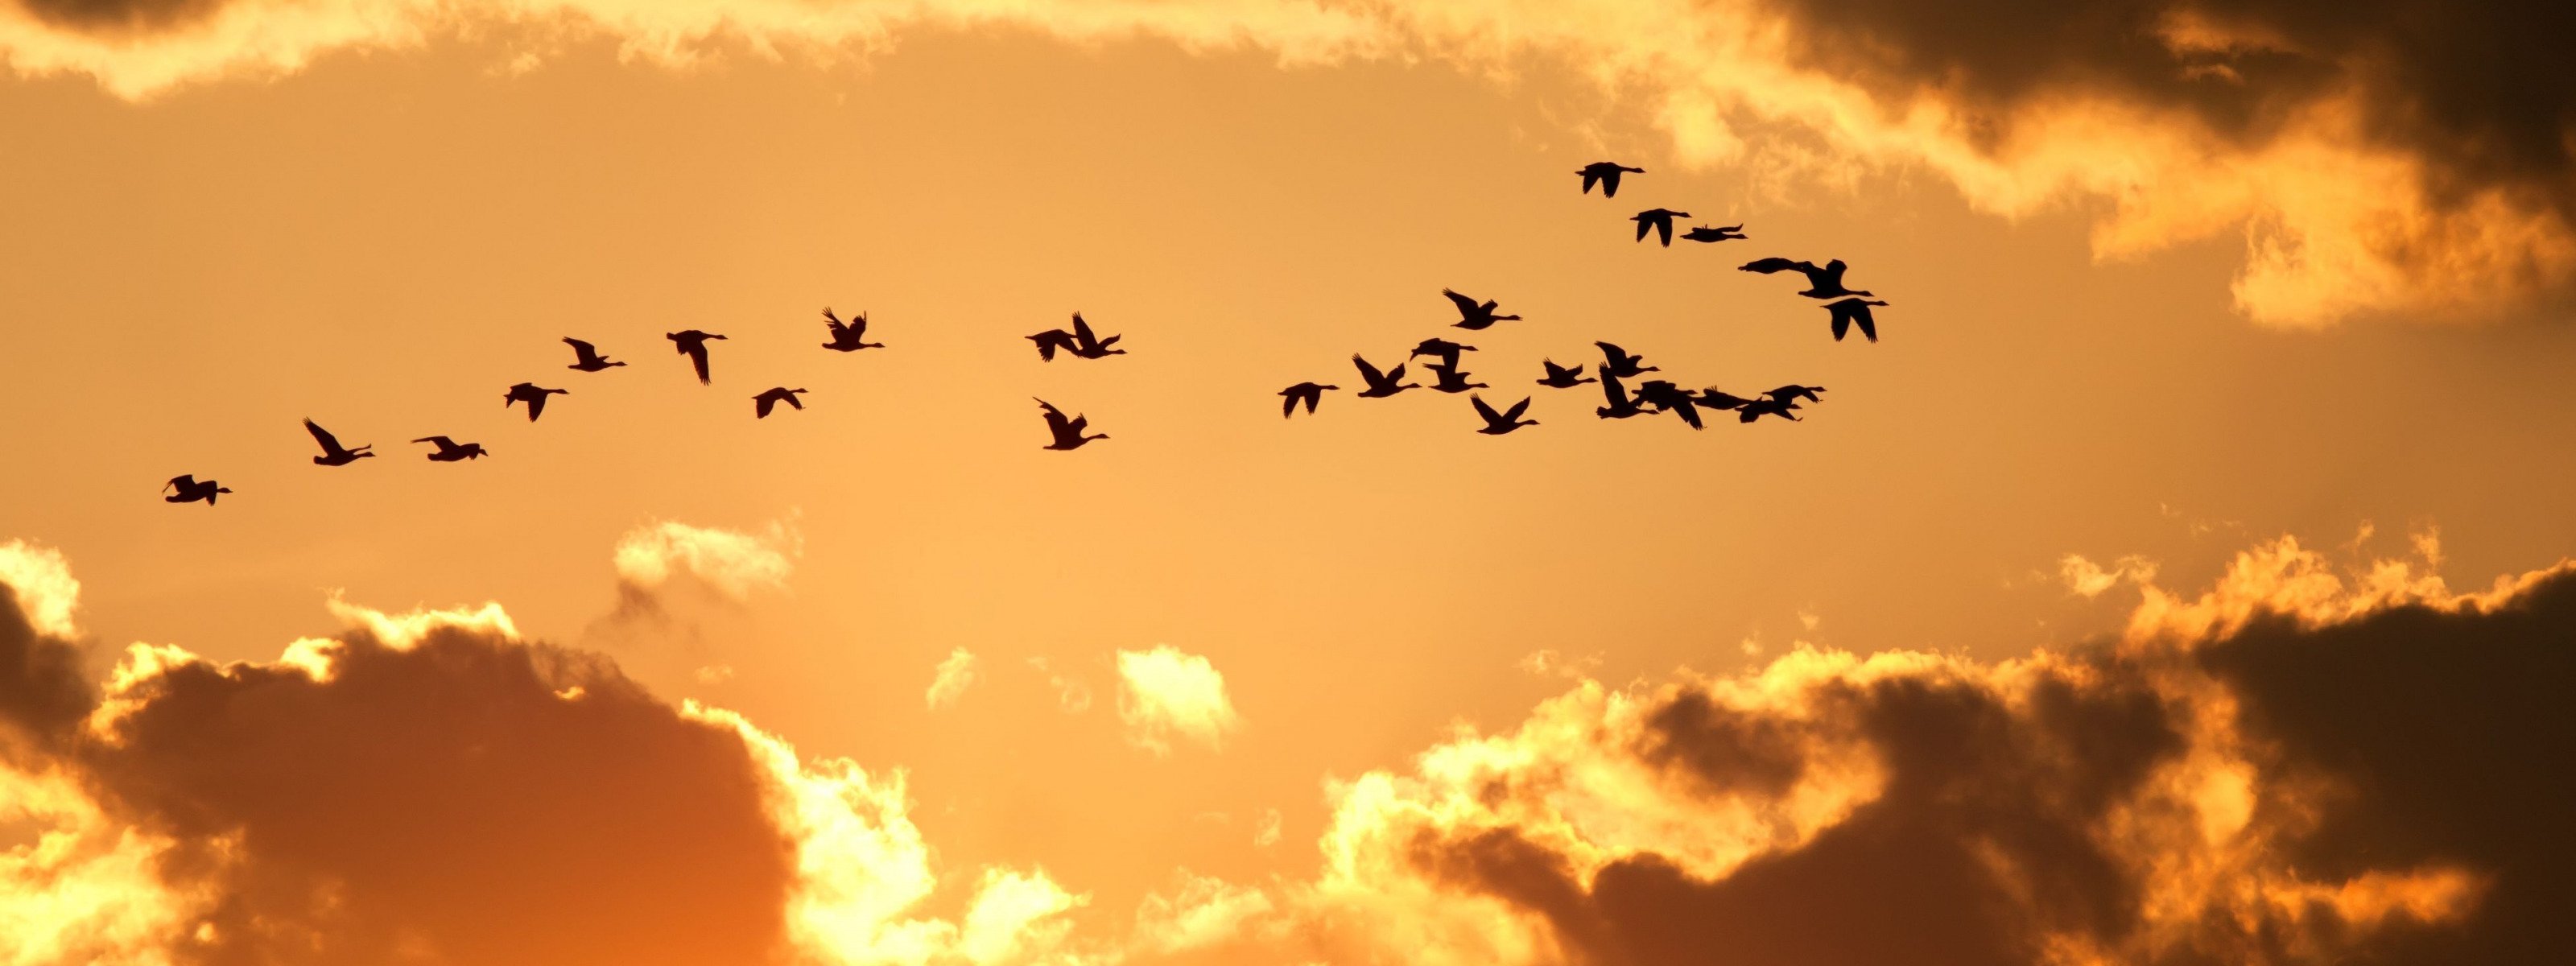 Музыка лети птичка. Клин птиц в небе. Птицы в небе панорама. Панорама летящие птицы. Журавли в небе панорама.